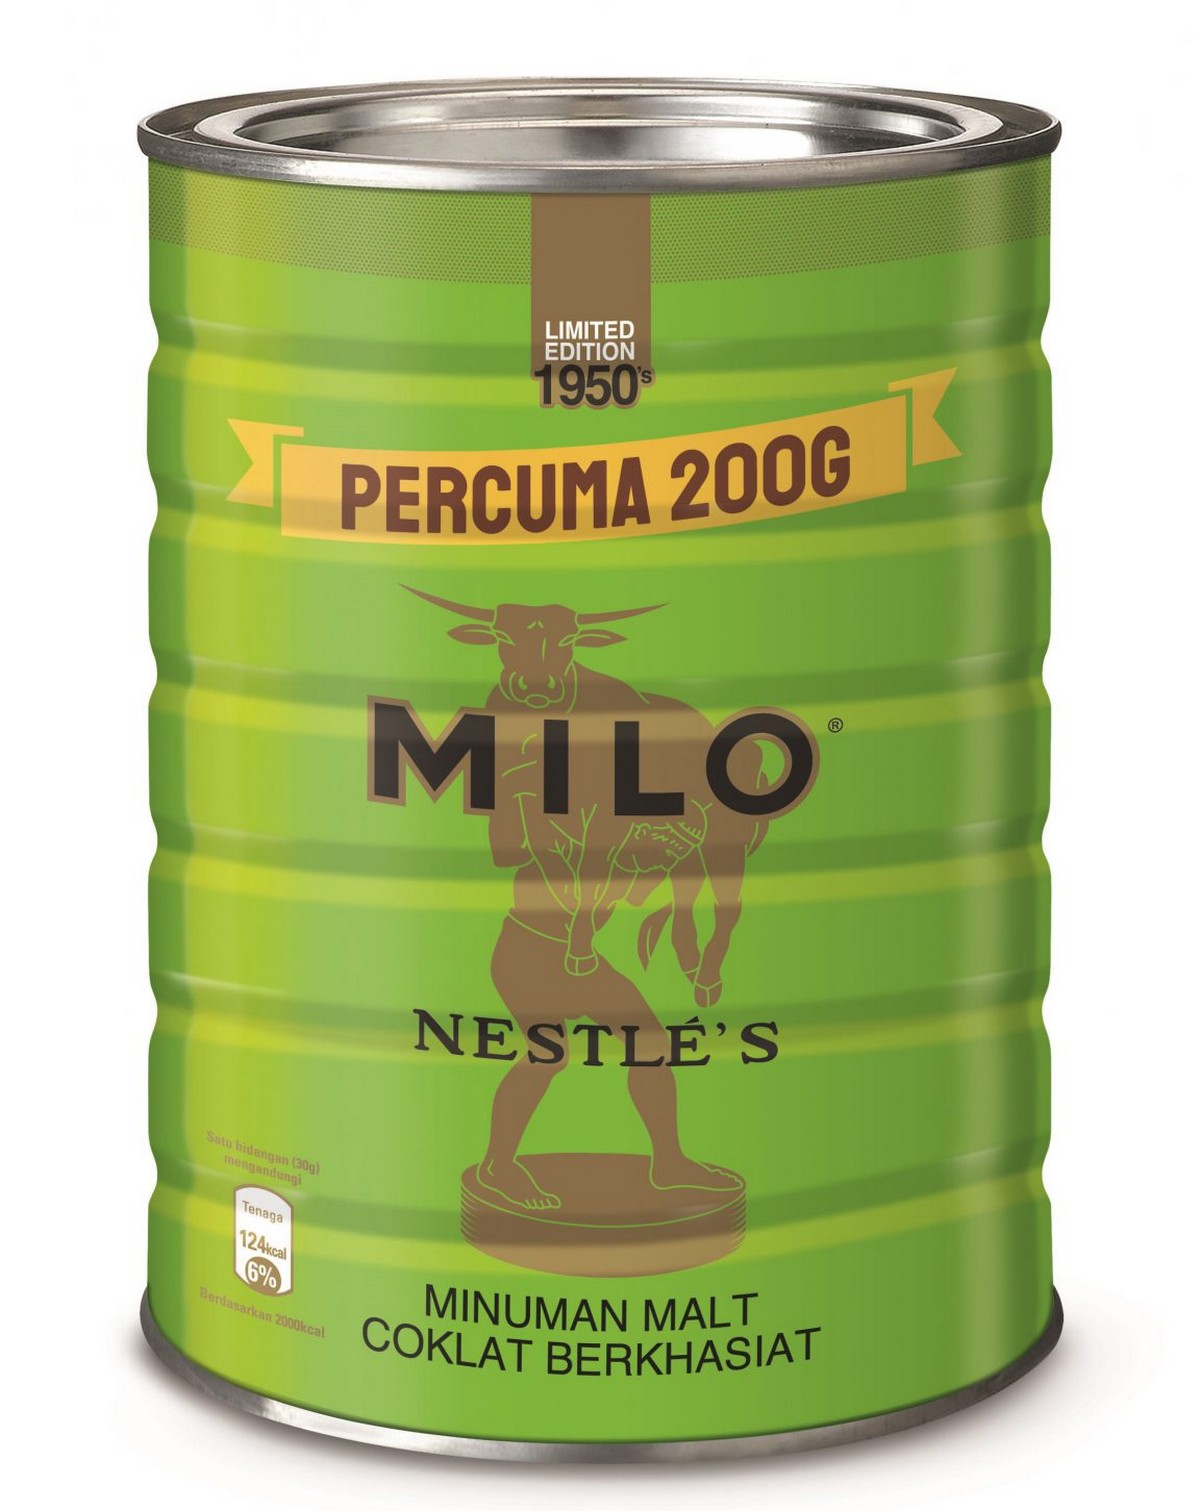 Milo 50 an diperkenalkan semula sebagai ulangtahun milo yang ke 70